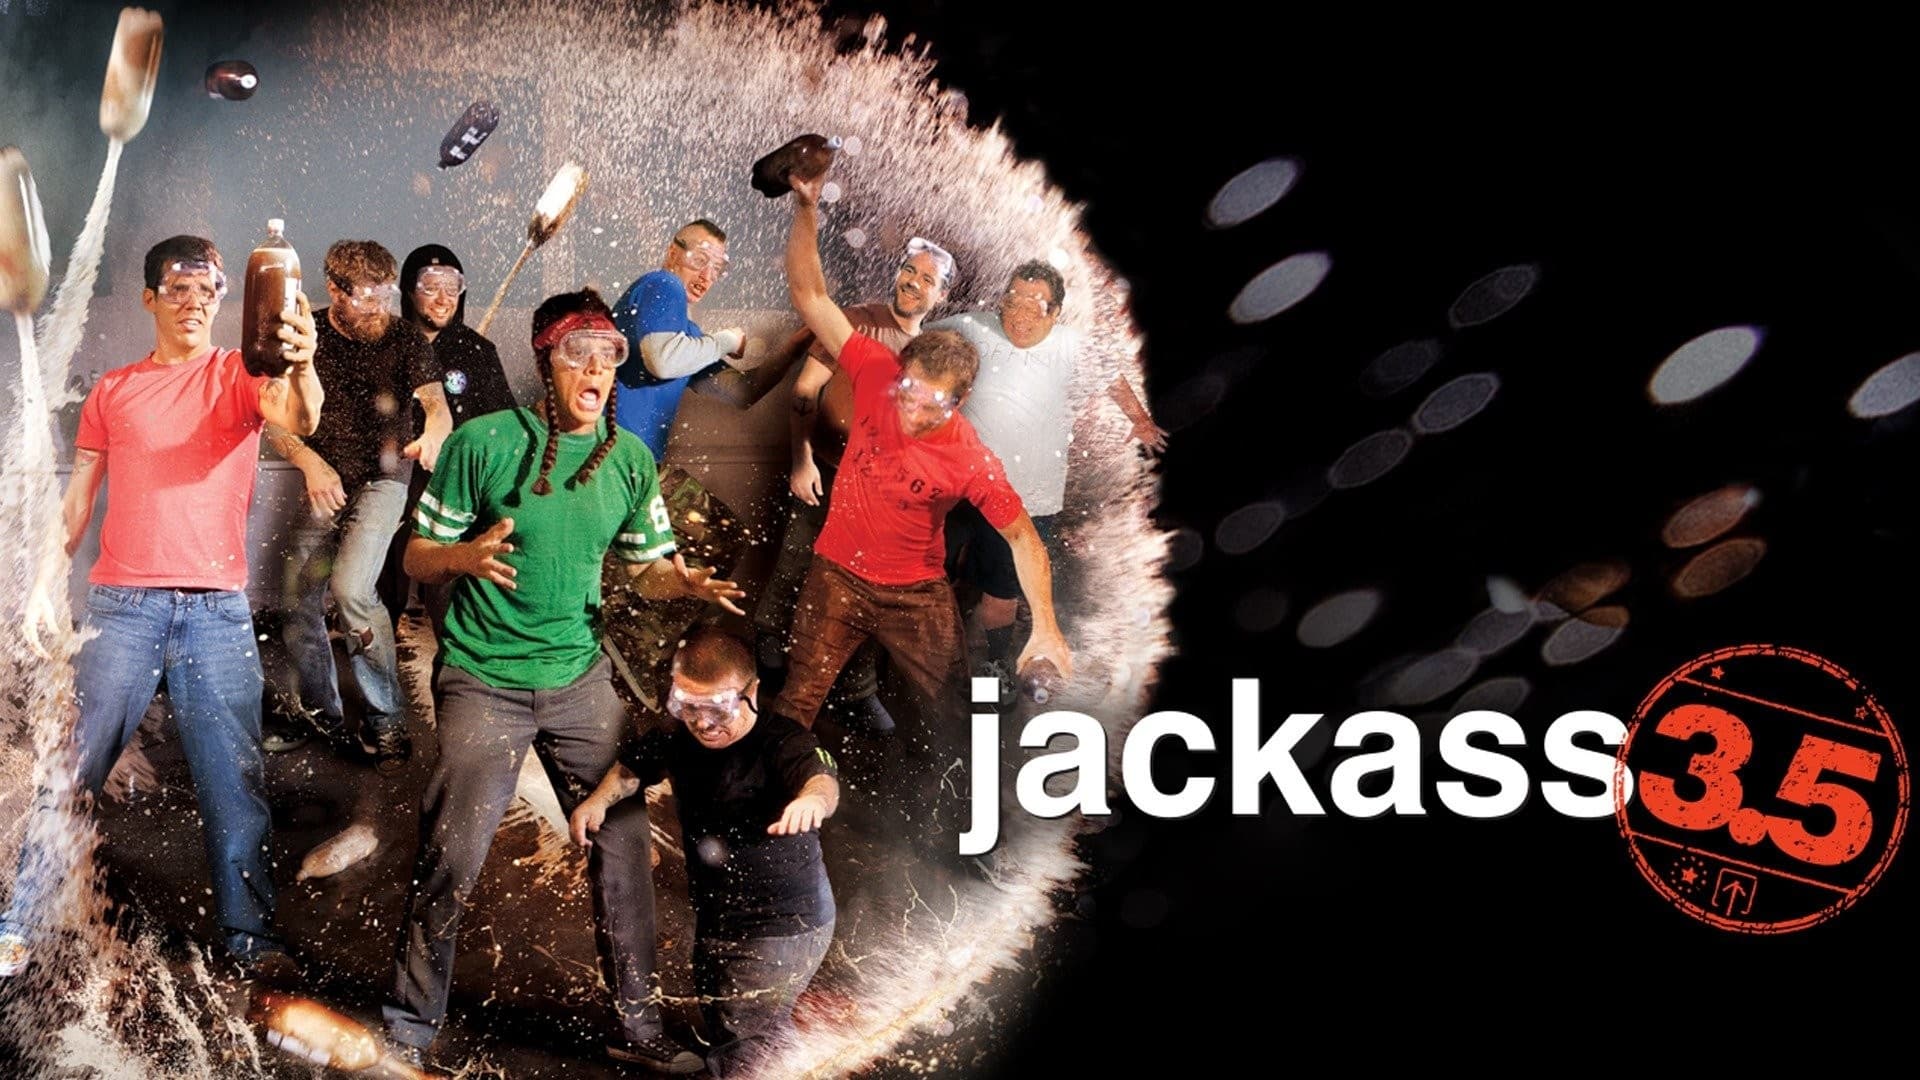 잭애스 3.5 (2011)